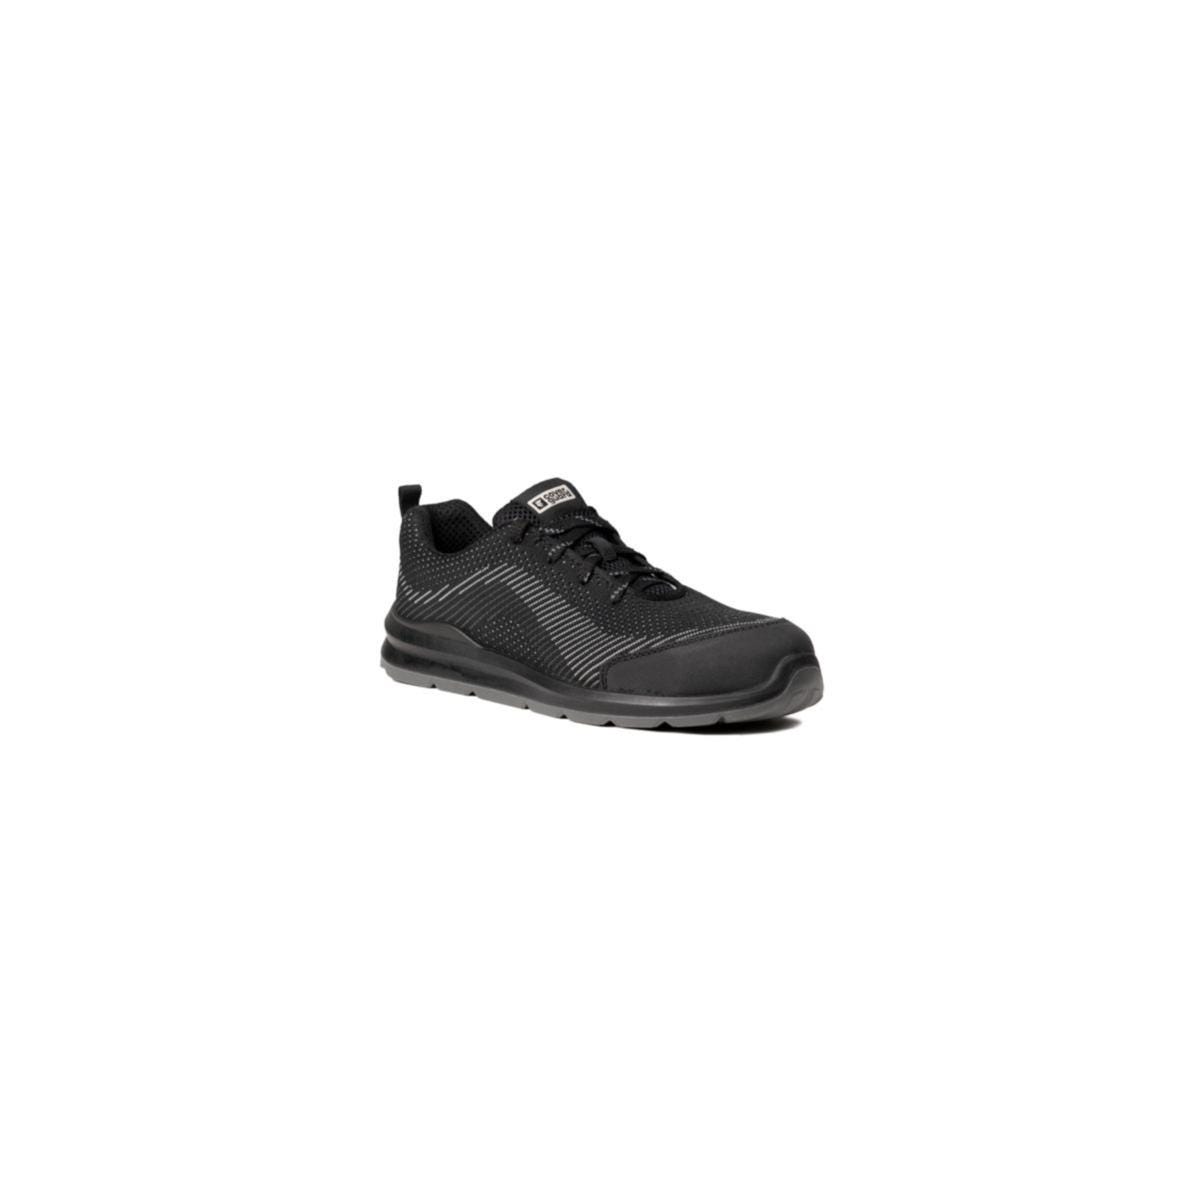 Chaussures de sécurité MILERITE S1P Basse Noir/Gris - COVERGUARD - Taille 41 0